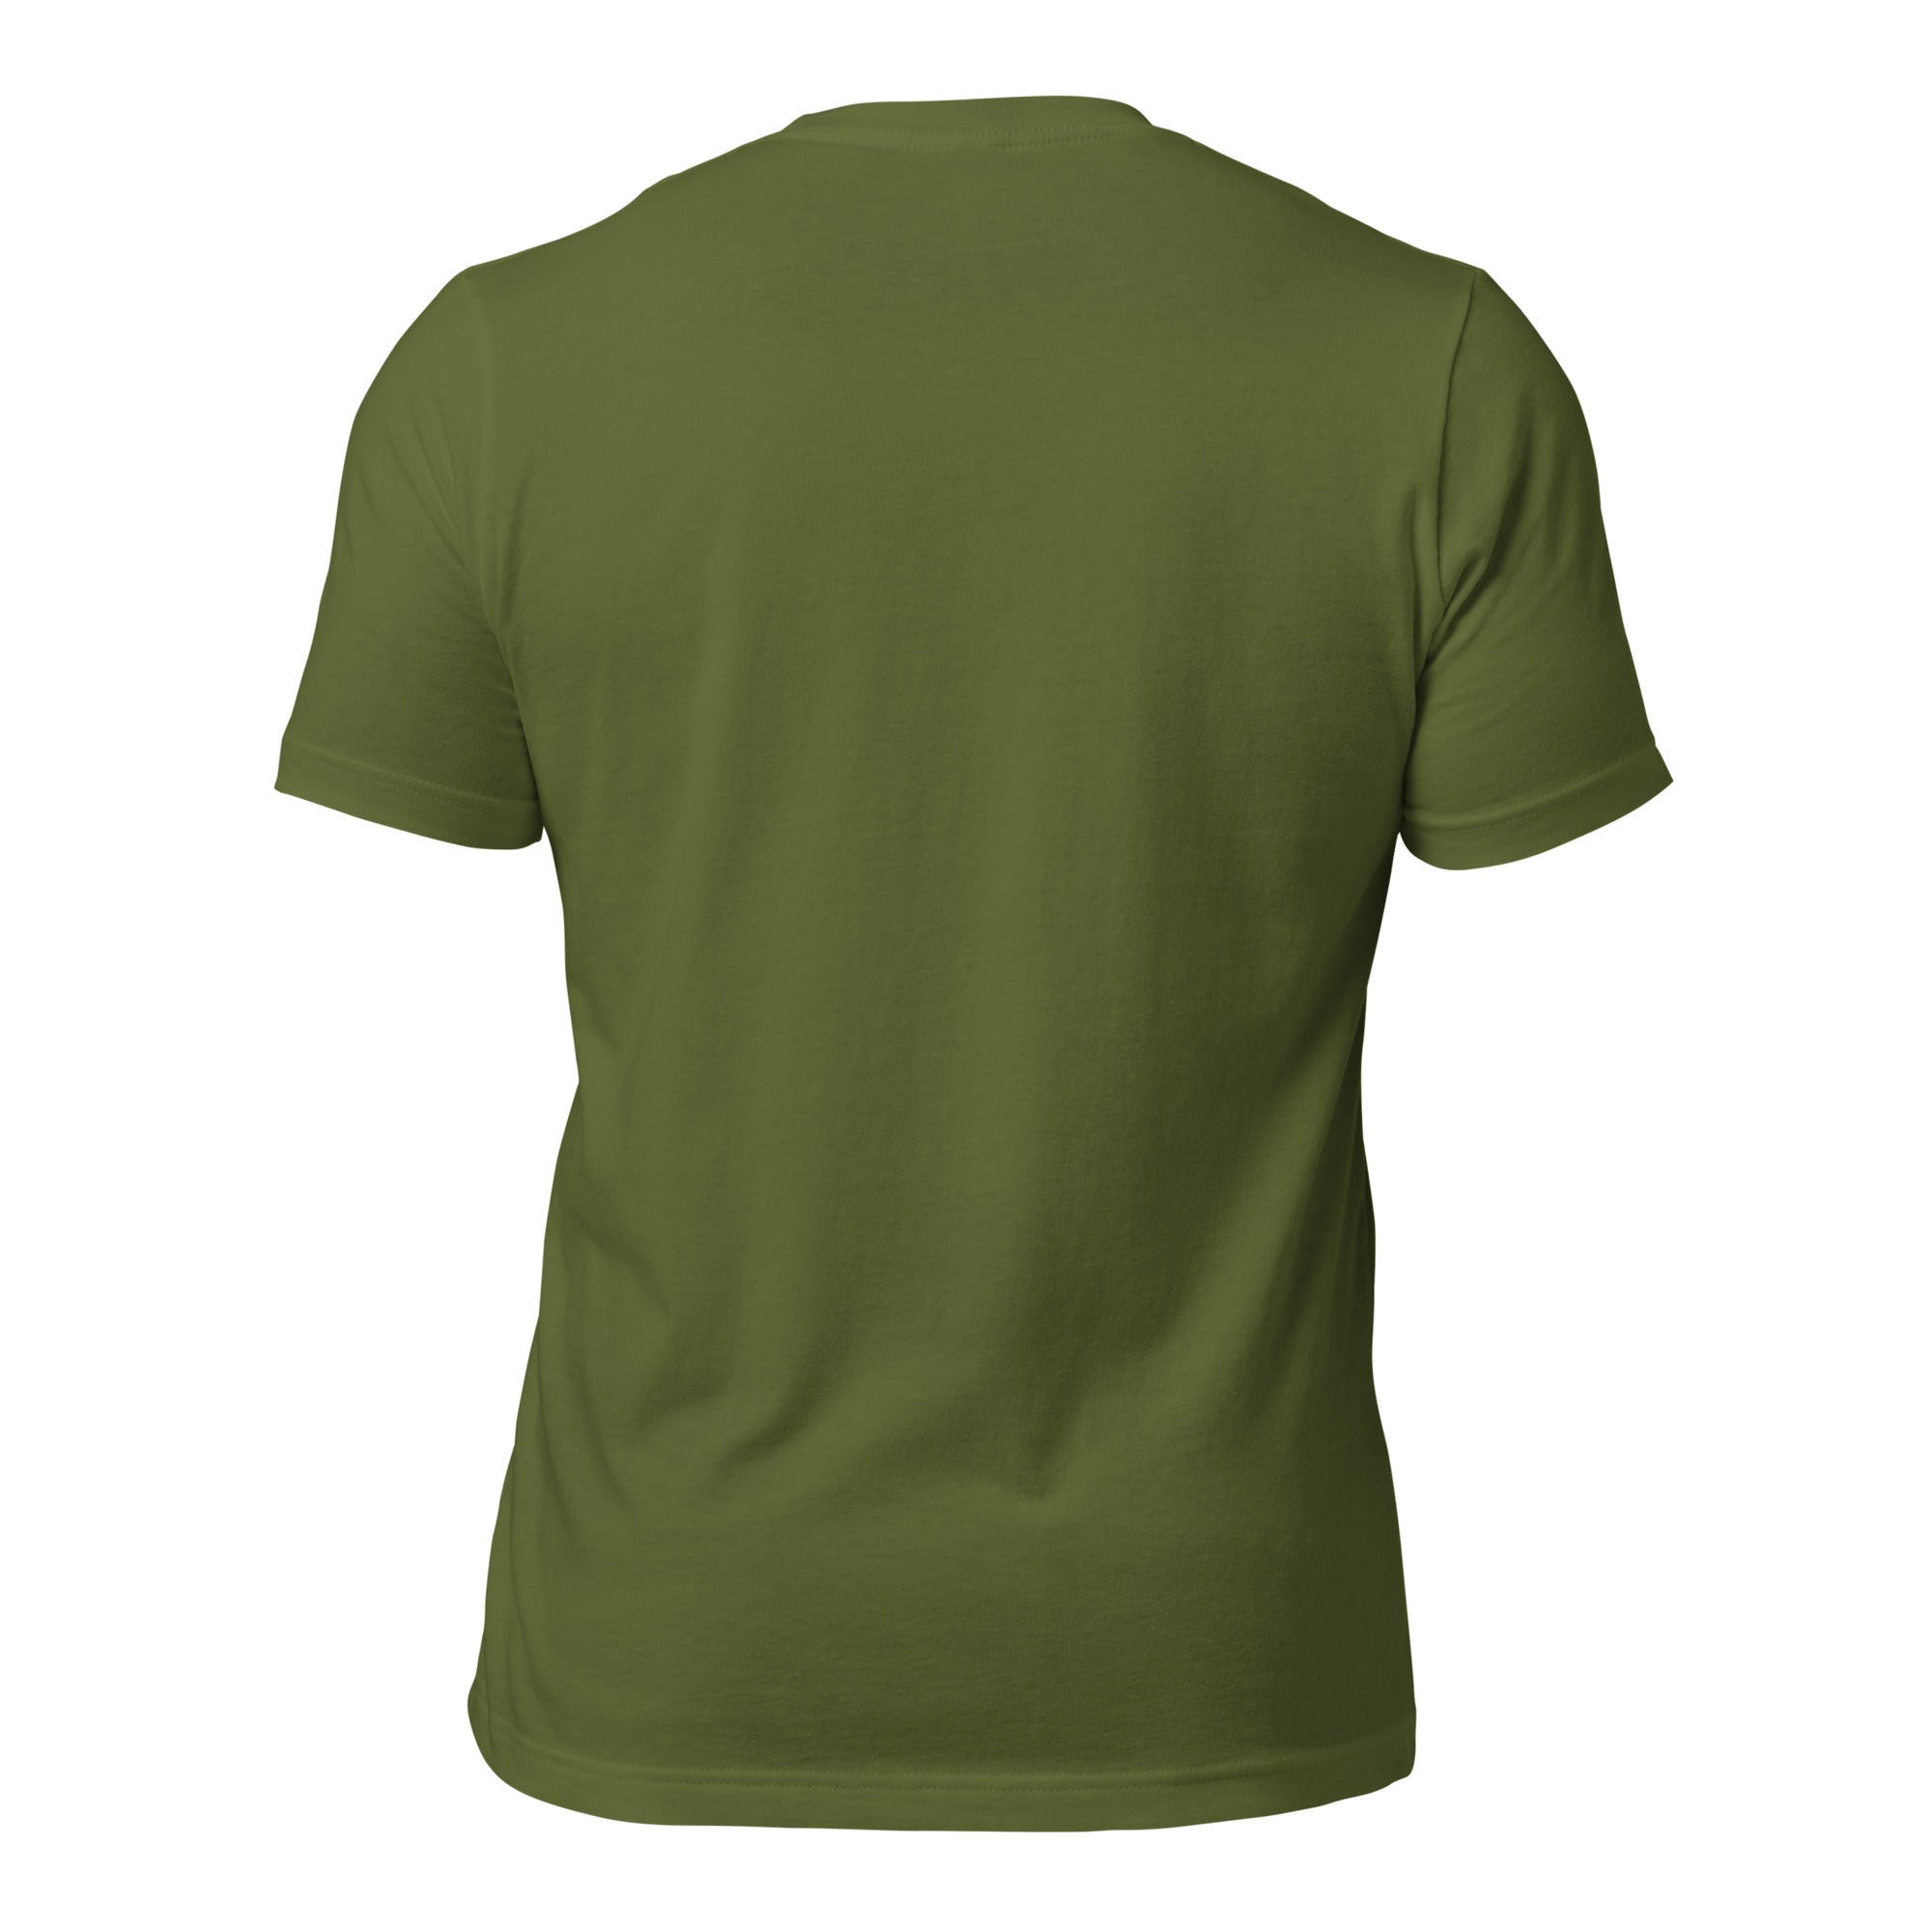 T-shirt en coton unisexe Sauvez les Bistrots, rejoignez l'Apéro sur couleurs foncées